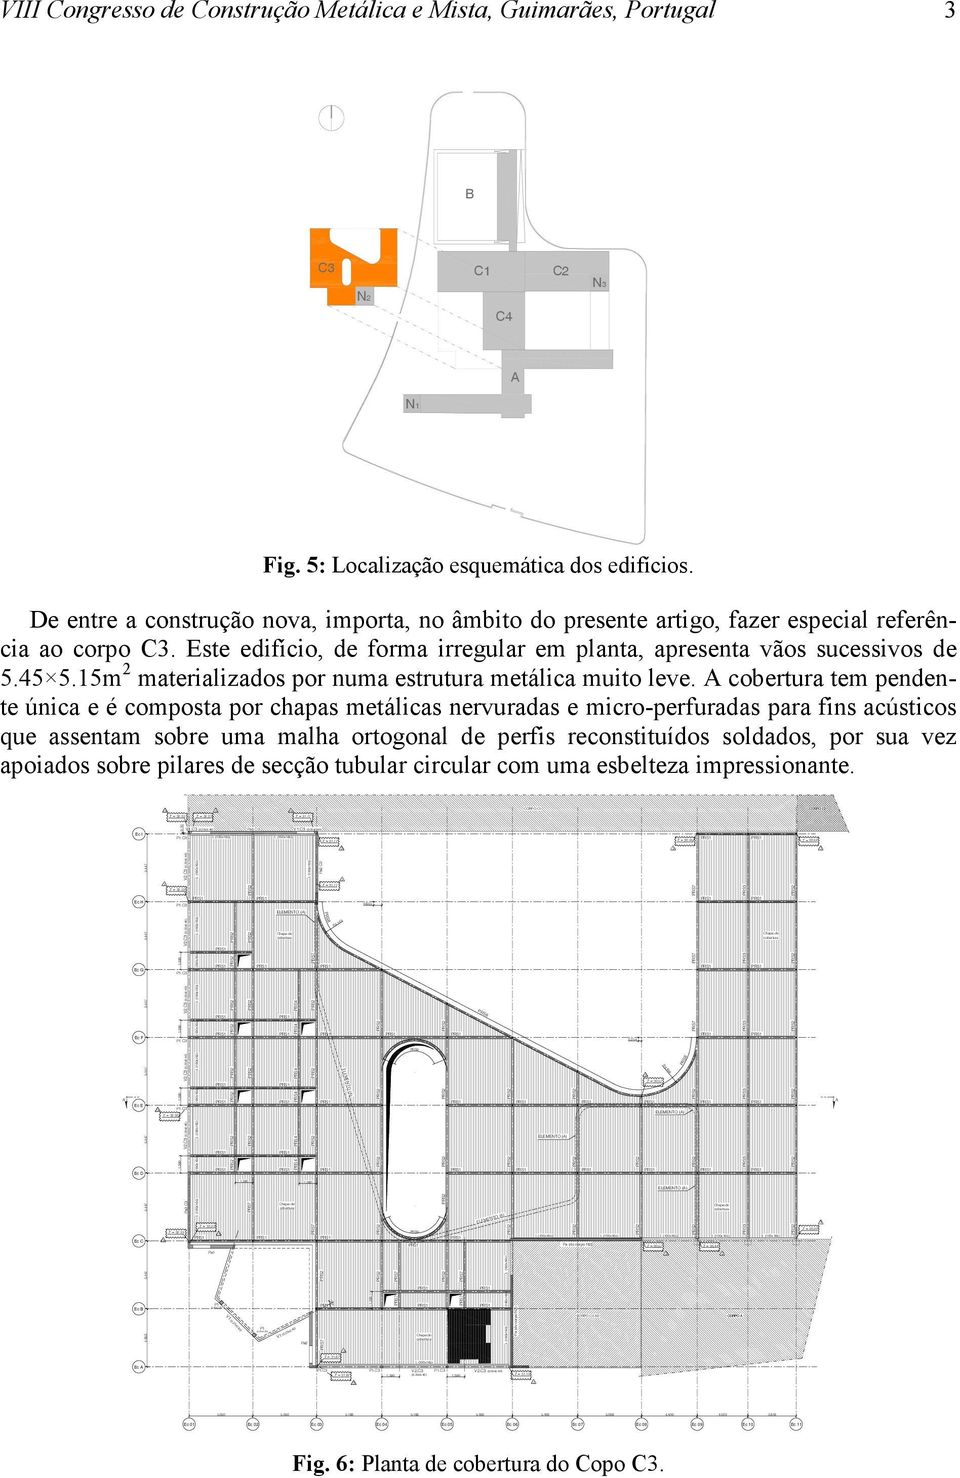 18 5.09 4.400 4.020.818 Z = 0.44 Z = 0.44 CORPO C2 Z = 0.20 VIII Congresso de Construção Metálica e Mista, Guimarães, Portugal B C C1 C2 N N2 C4 A N1 Fig. 5: Localização esquemática dos edifícios.